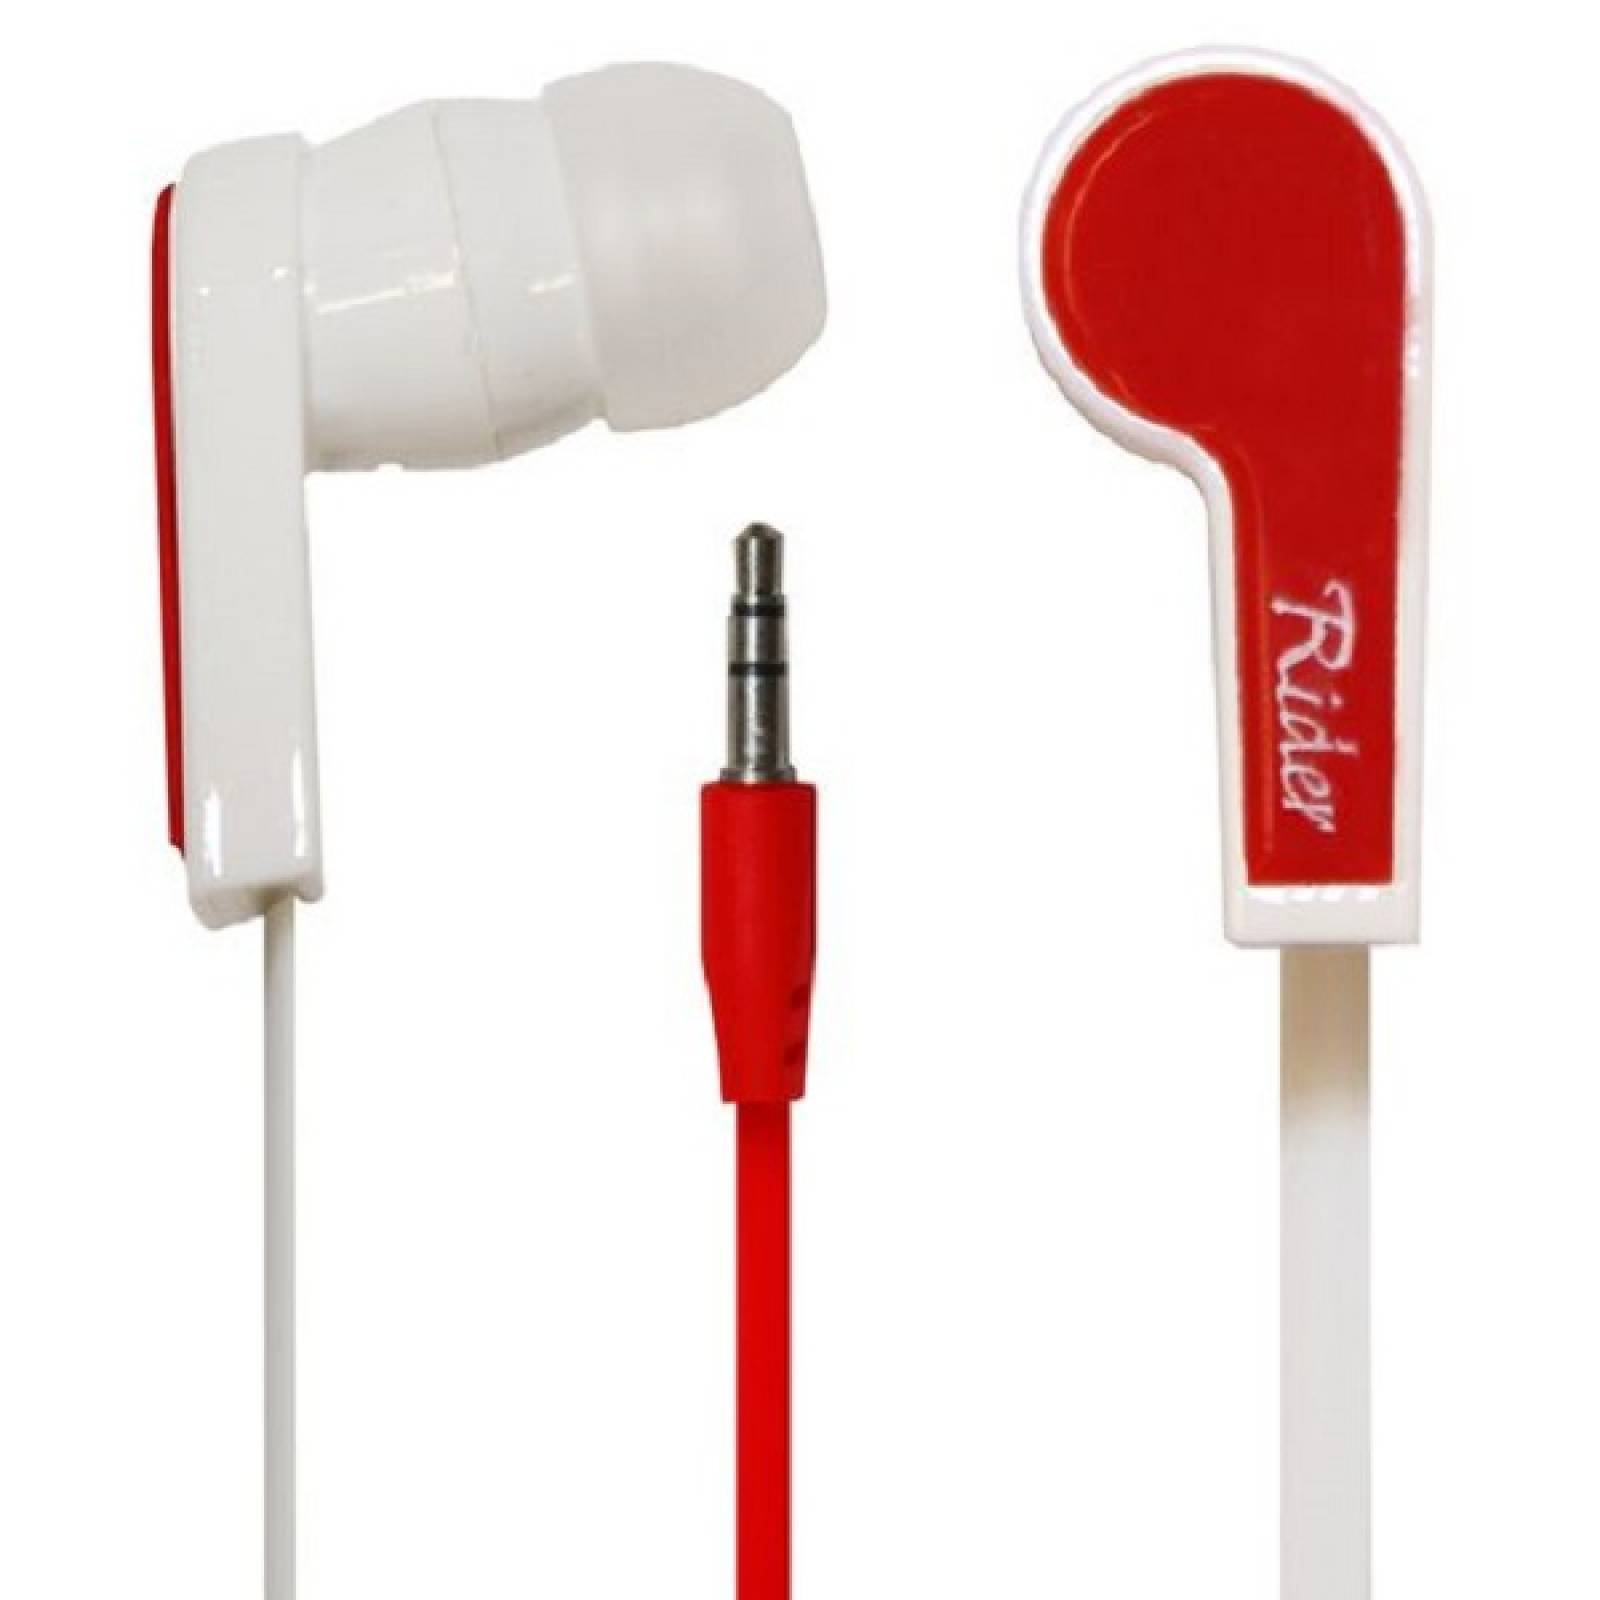 Audifonos Ridgeway In ear De silicon EAR95L Rojo - Reacondicionado